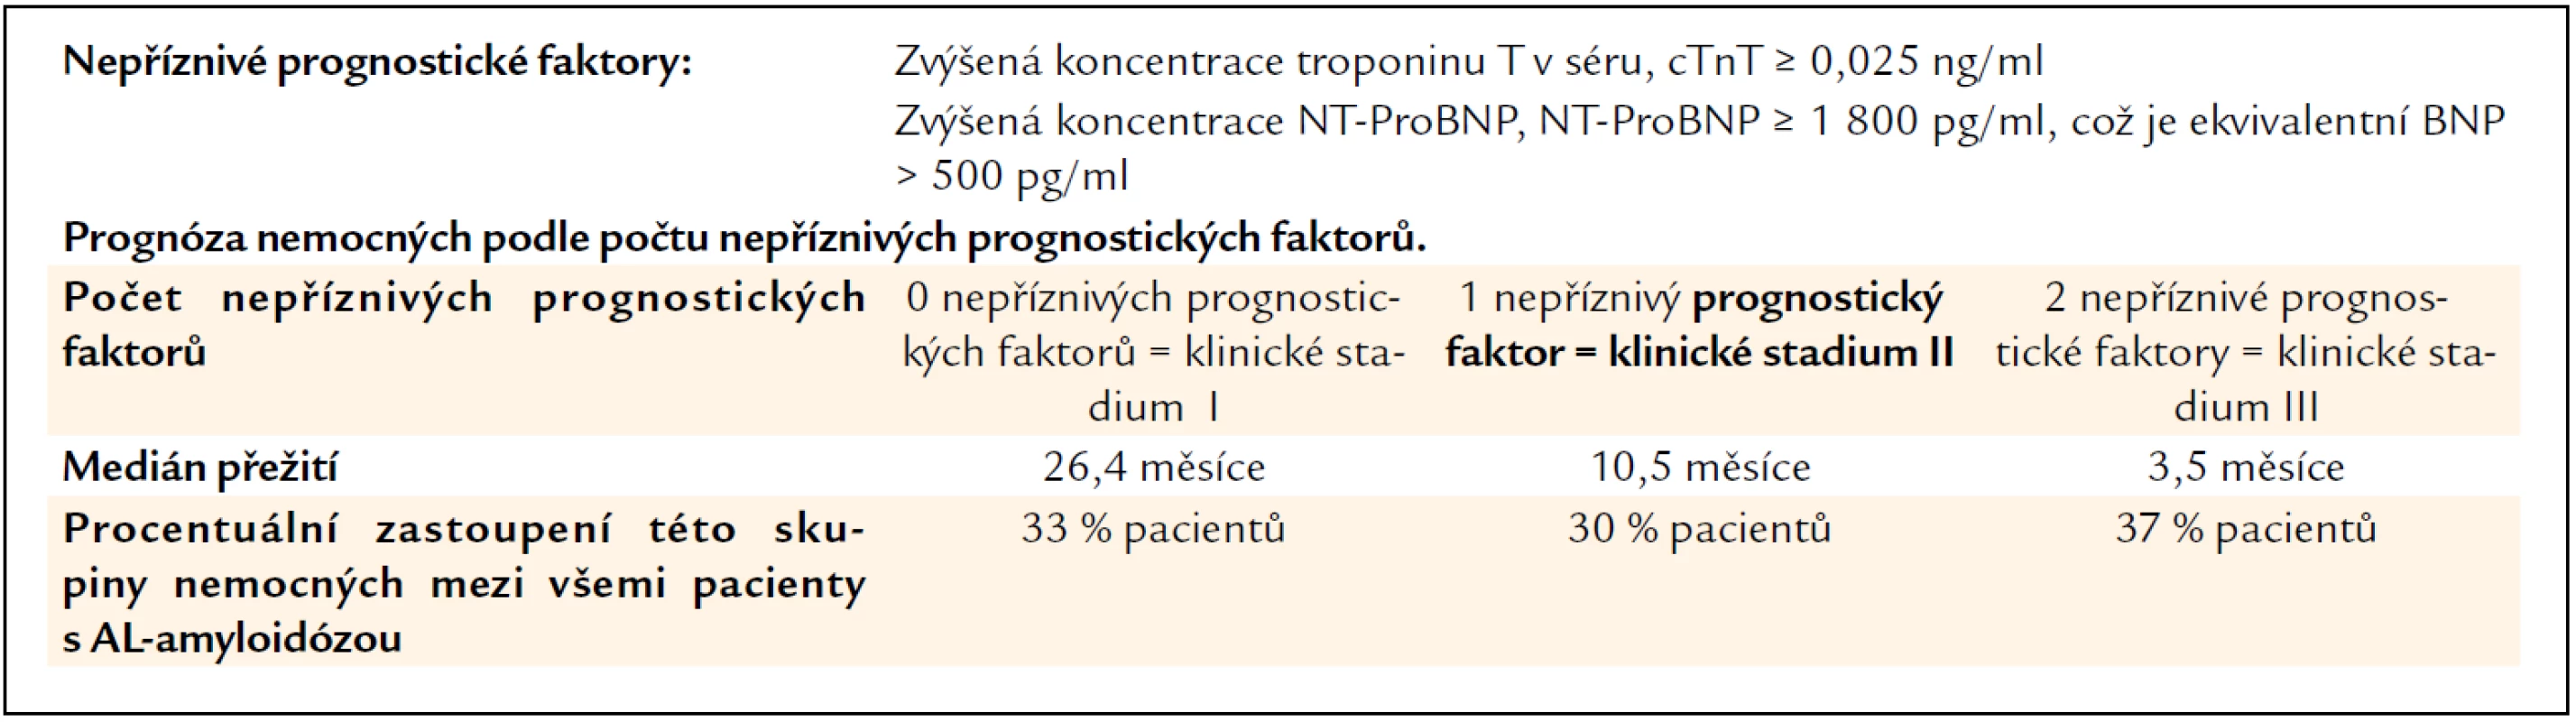 Prognostický index založený pouze na troponinu a NT-proBNP Dispenzieri, 2004 [167].